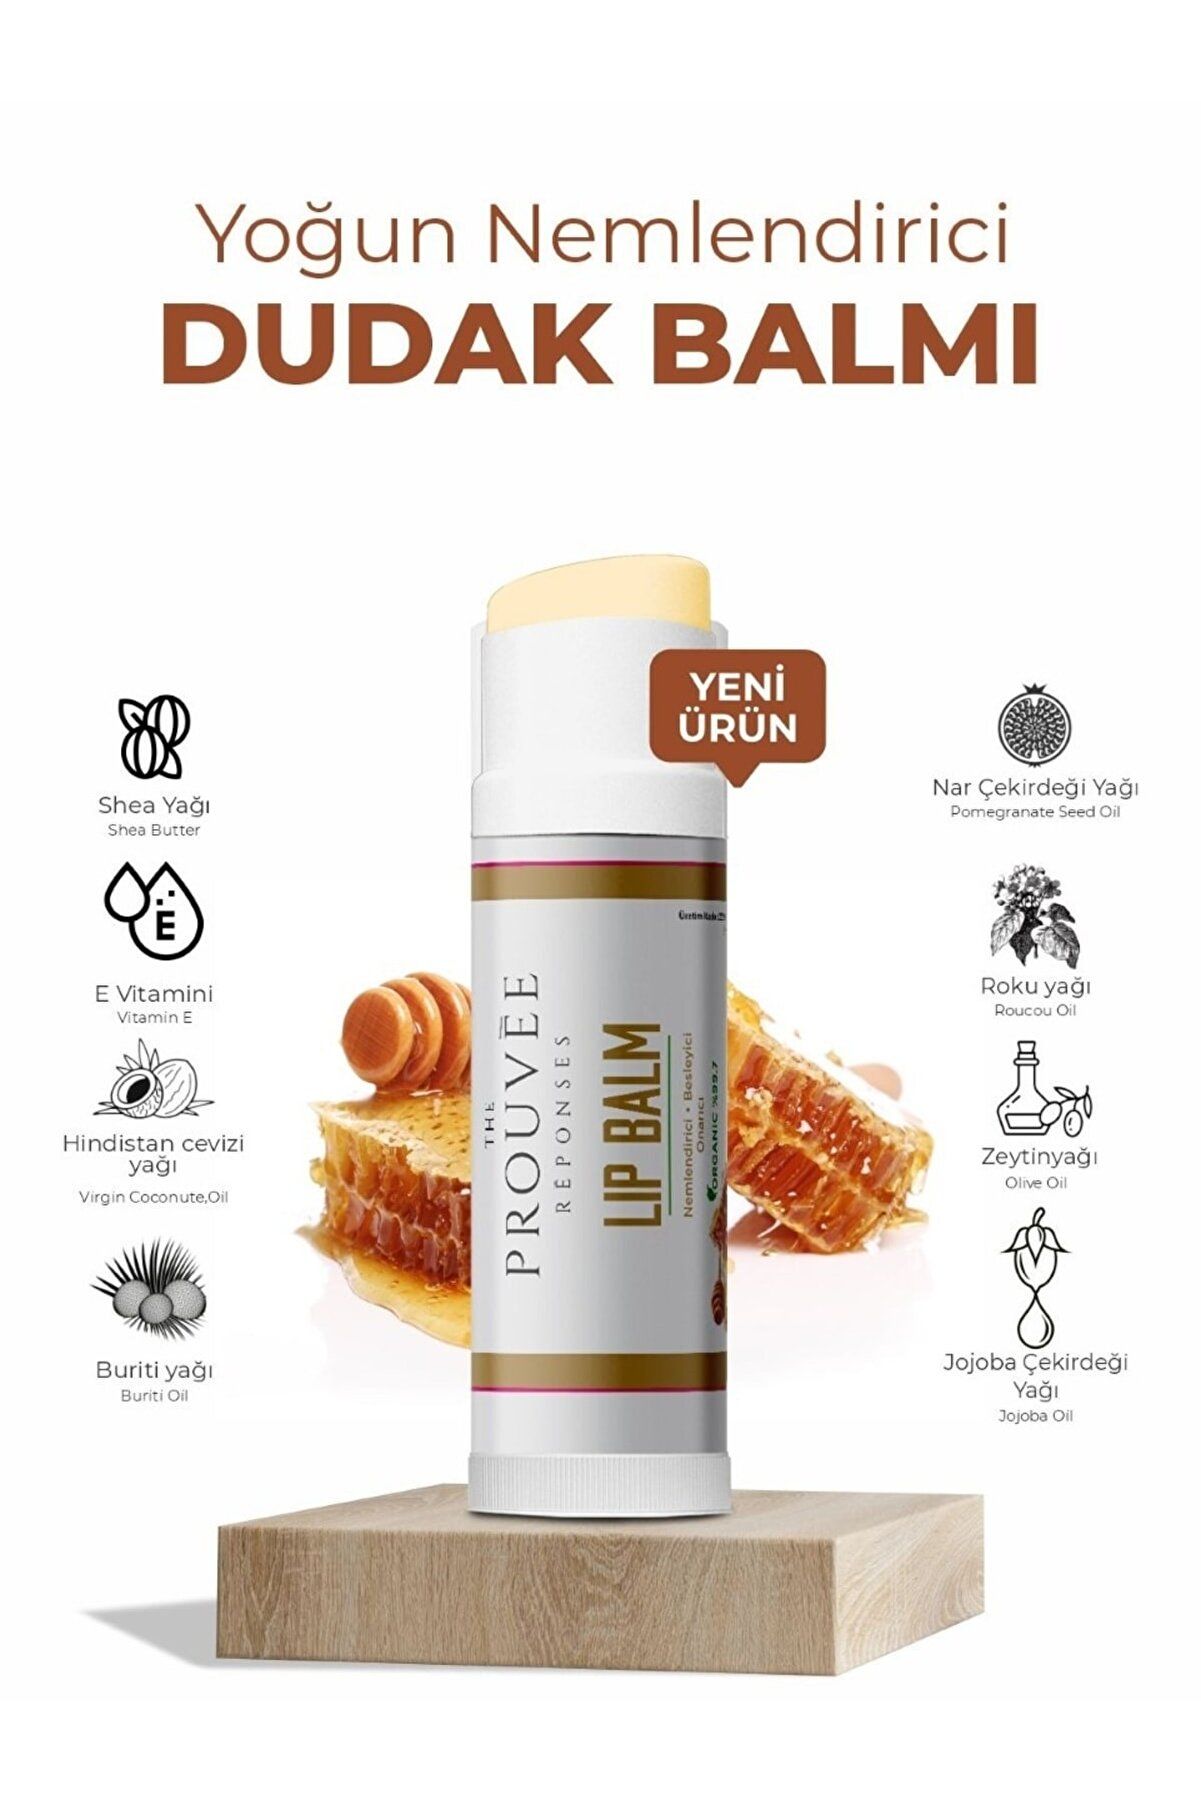 The Prouvee Reponses Bal Aromalı Organik Içerikli Dudak Bakım Kremi 5ml - Honey Lip Balm 5ml